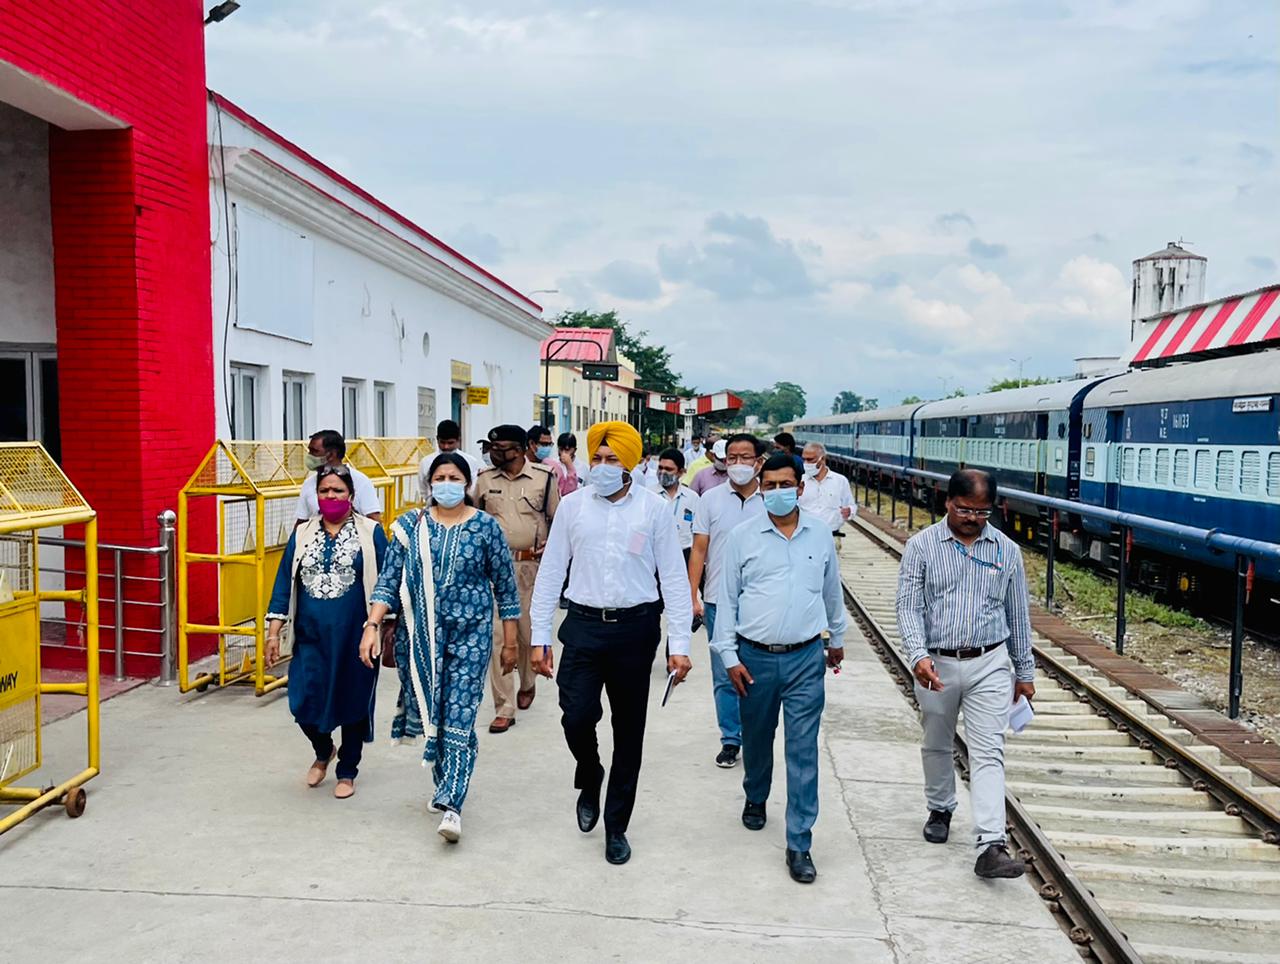 रेलवे बोर्ड की यात्री सुविधा समिति (पीएसी) उत्तर क्षेत्र ने लालकुआँ रेलवे स्टेशन का निरीक्षण किया